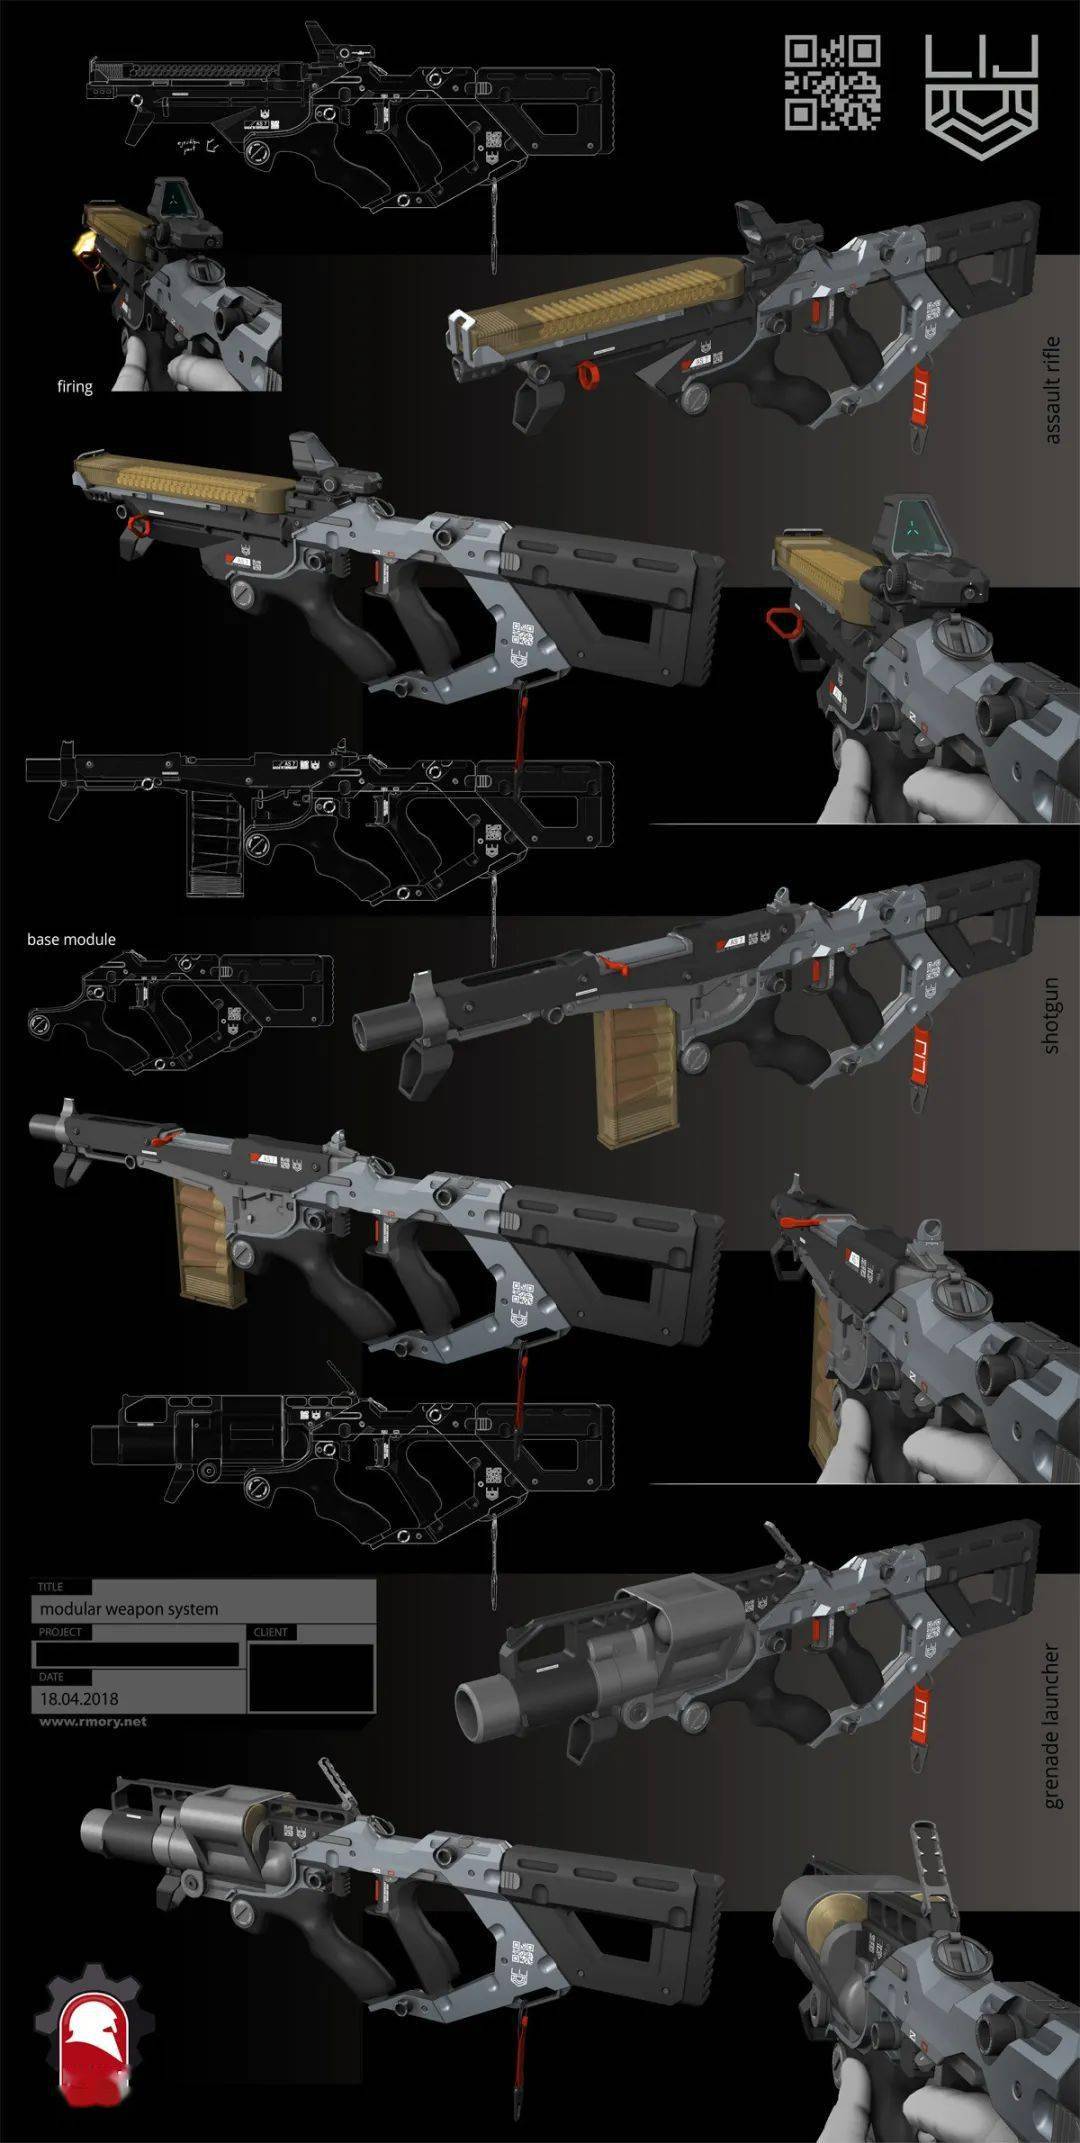 rmory studios工作室总监与武器顾问,并专精于枪械类型的武器概念创作